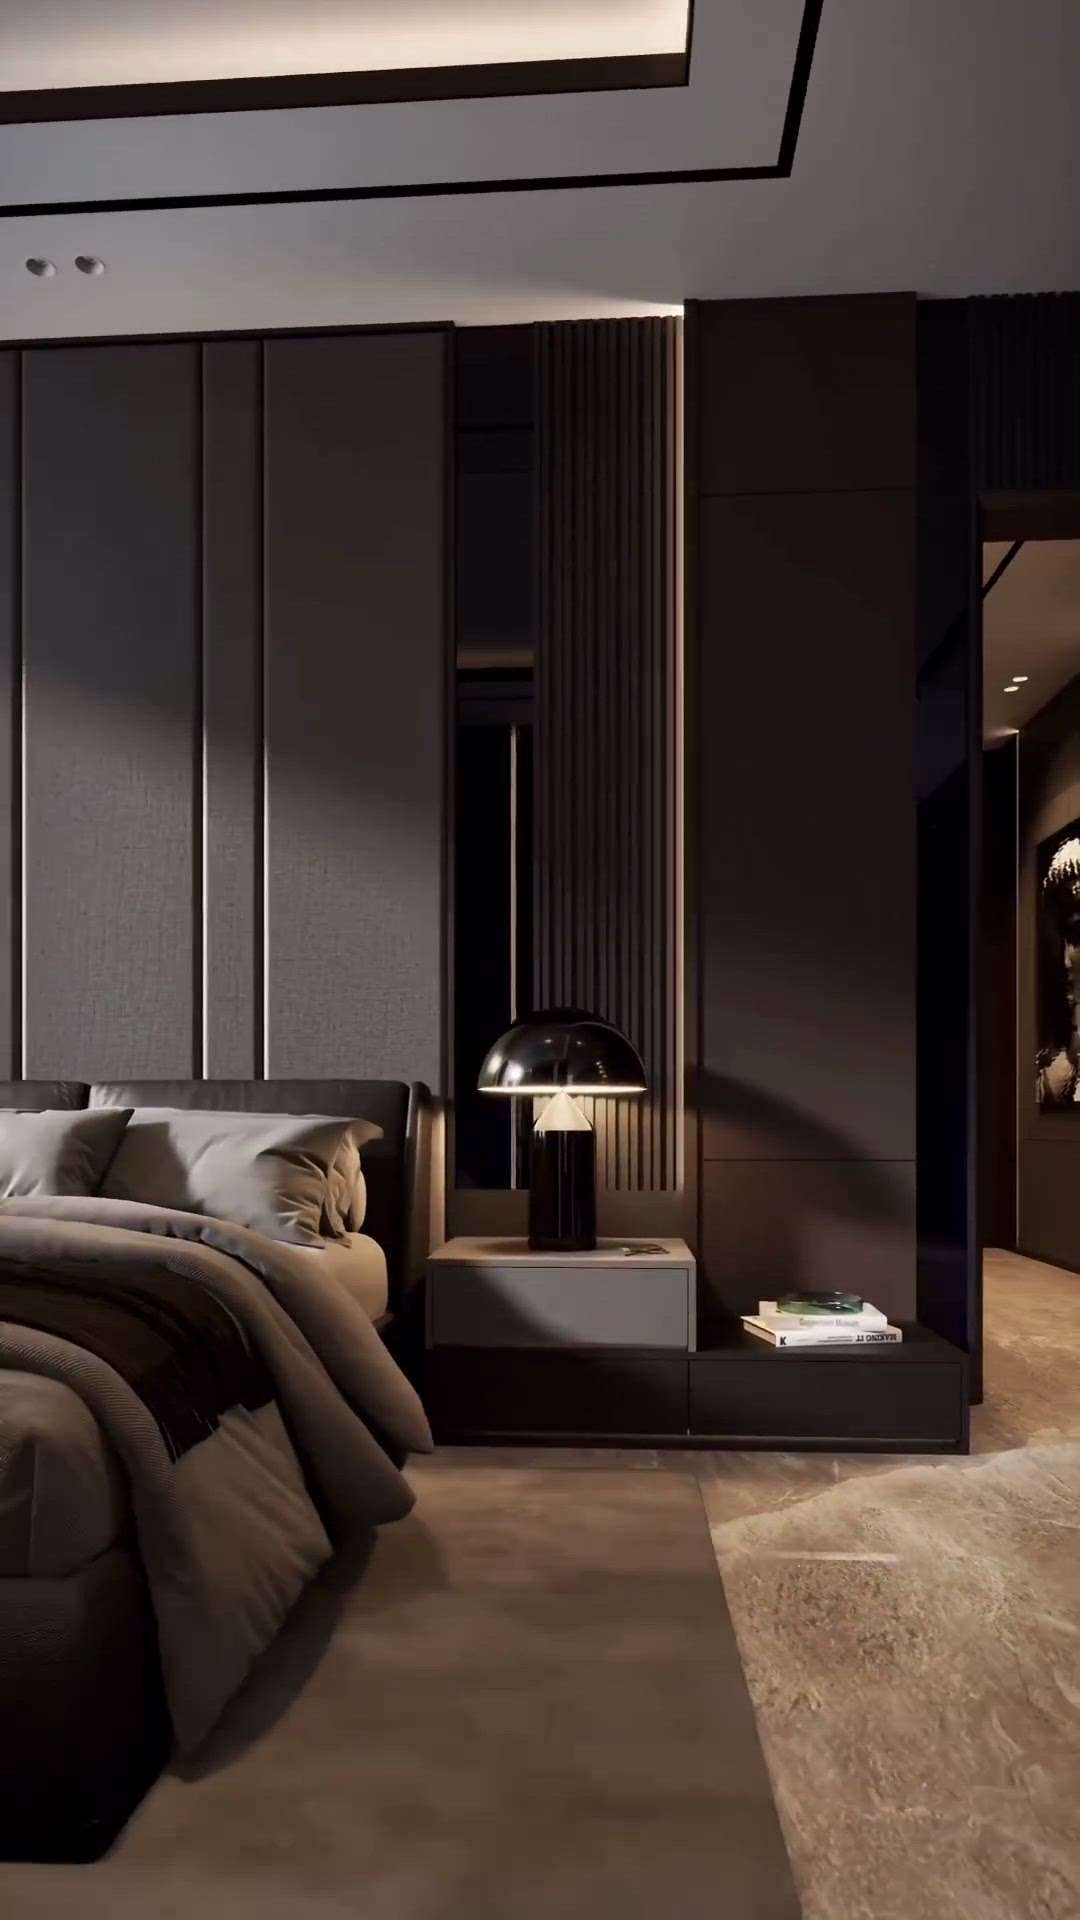 #InteriorDesigner  #MasterBedroom  #darkshades  #BedroomDecor  #KingsizeBedroom  #BedroomIdeas  #Architectural&Interior  #architecturedesigns  #Designs